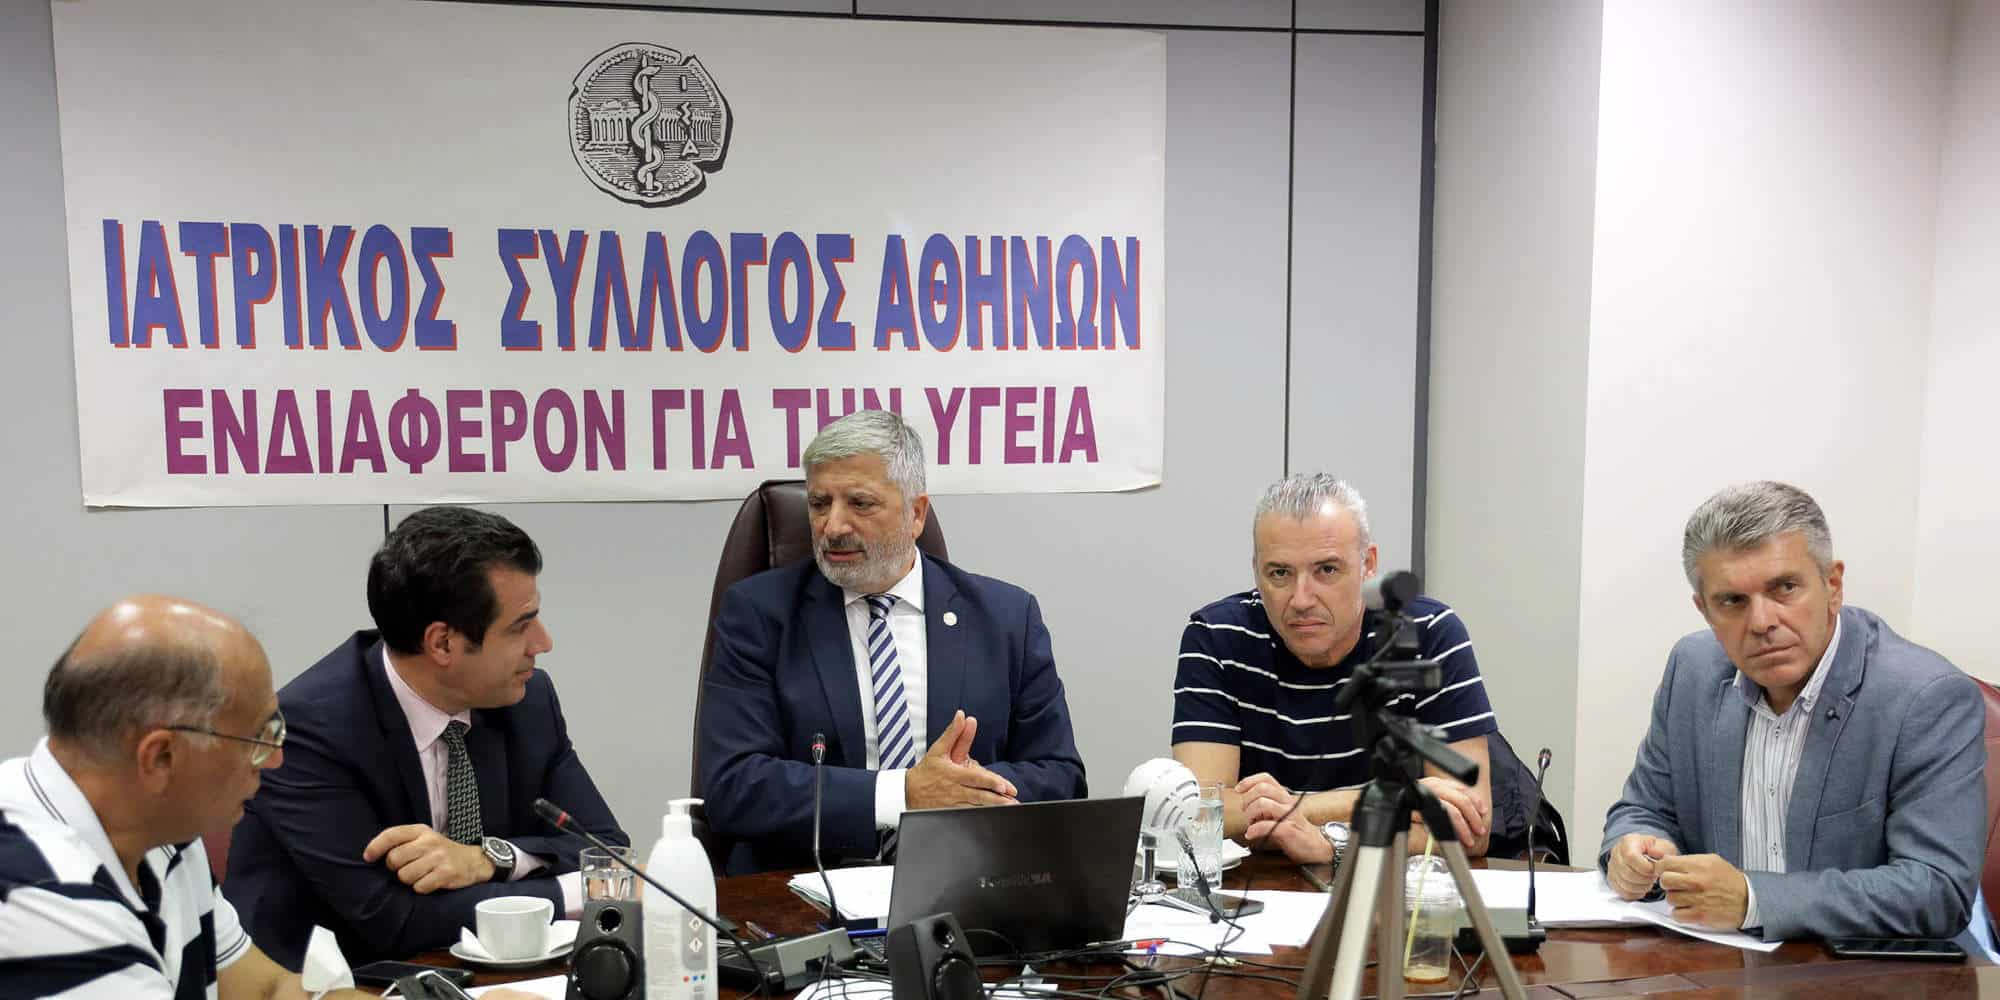 Συνεδρίαση του Ιατρικού Συλλόγου Αθηνών (ΙΣΑ) με τον πρόεδρο του, Γιώργο Πατούλη / Φωτογραφία: Eurokinissi